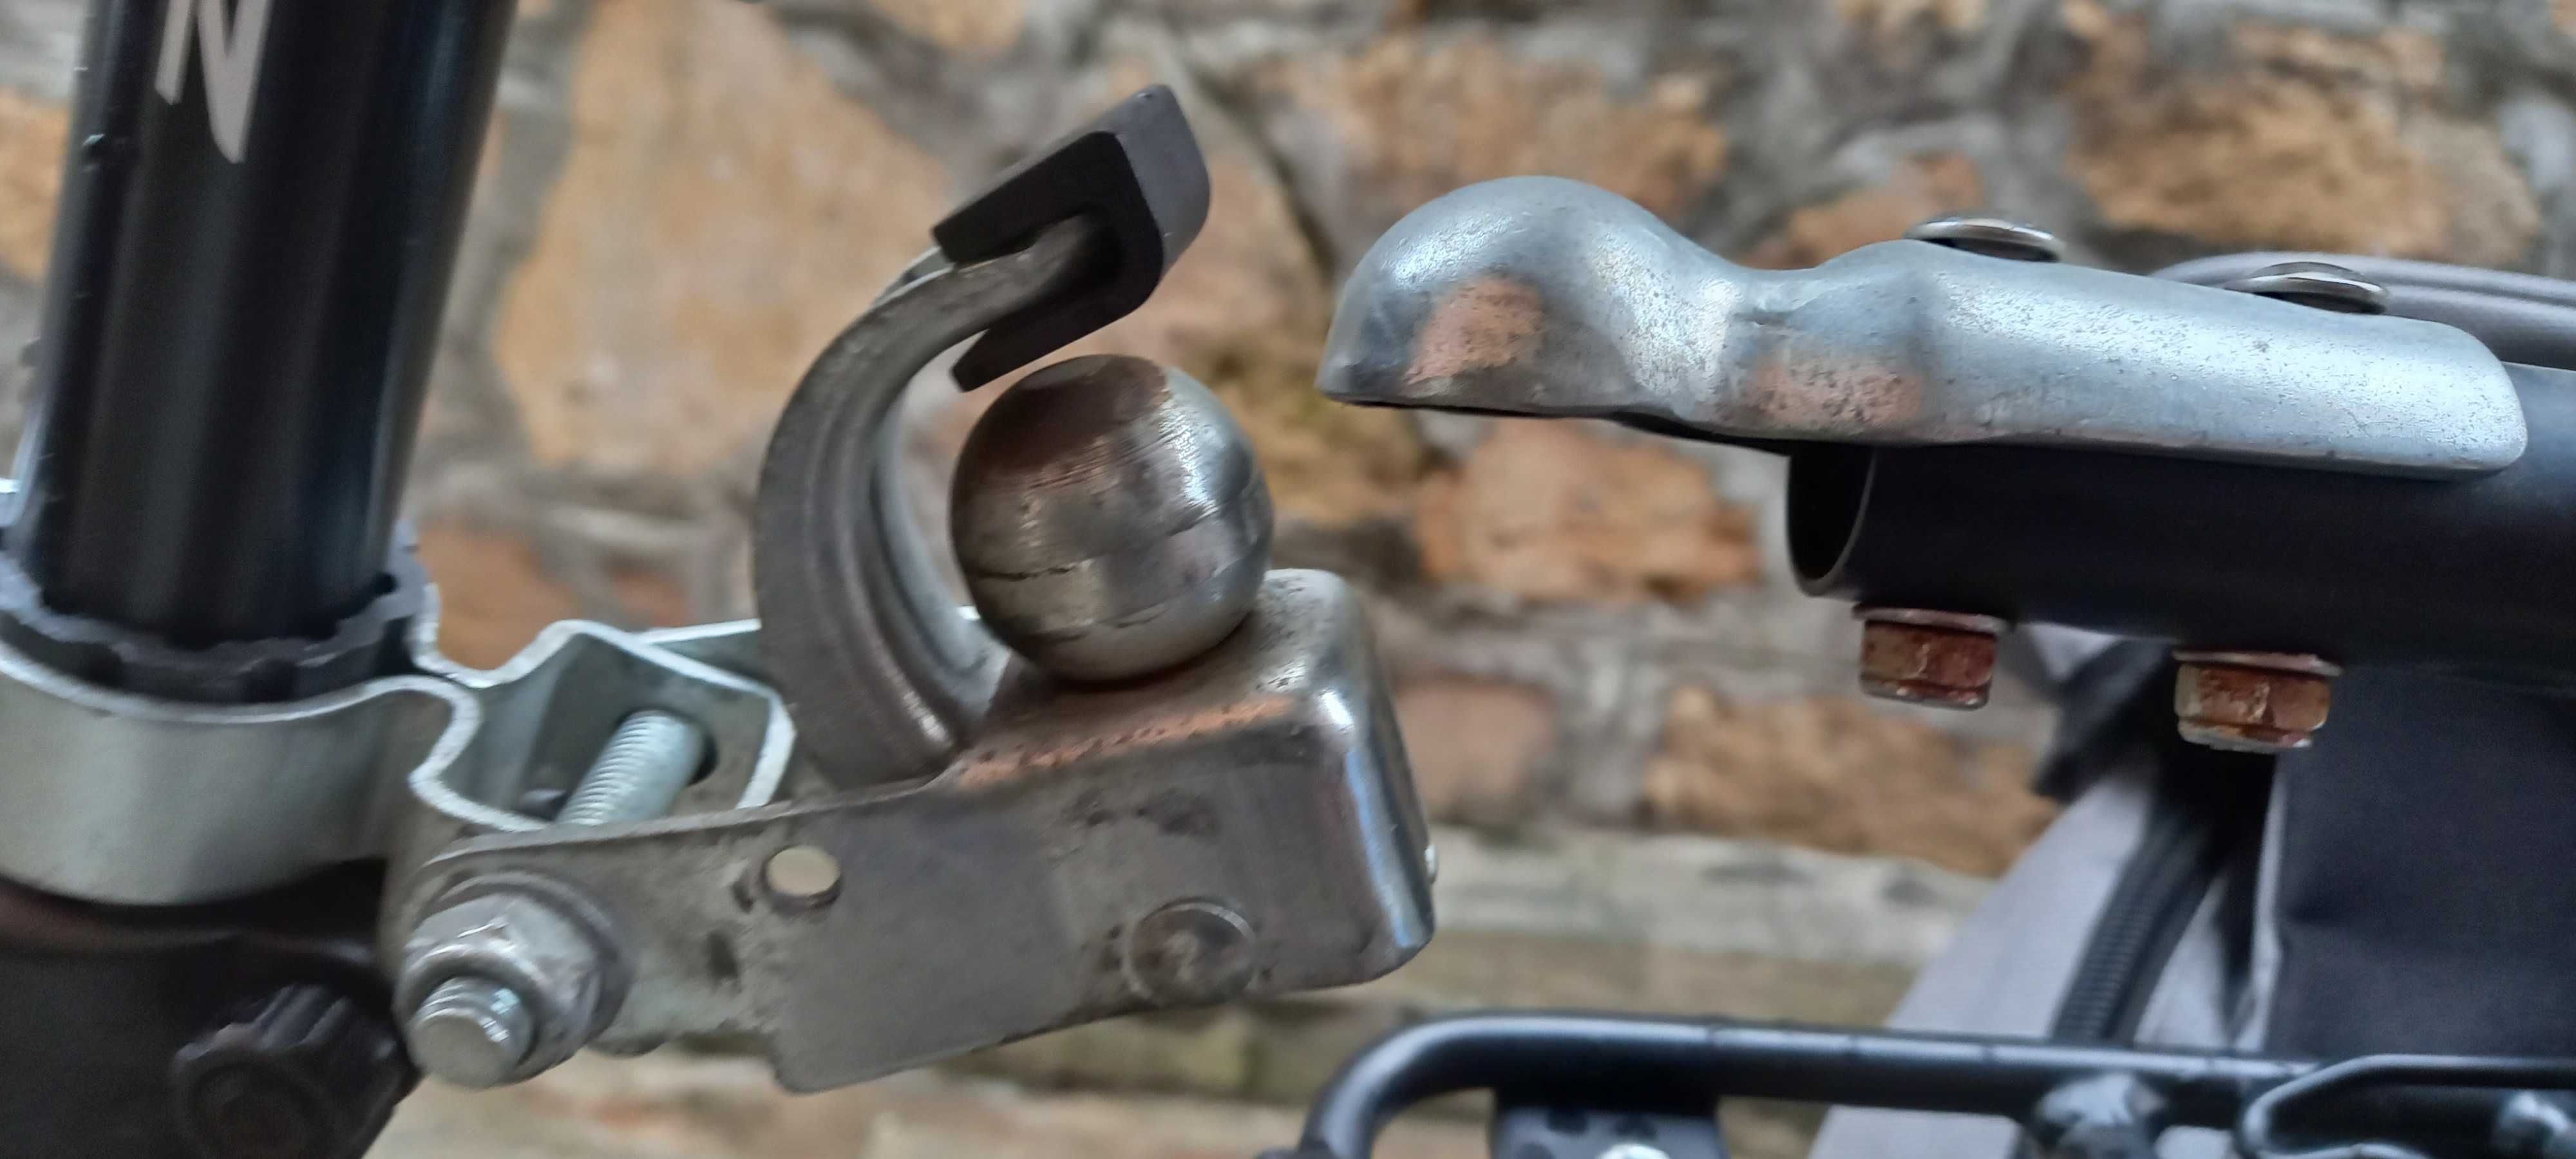 Cărucior bicicletă pentru obiecte - DURAMAXX (Bike Cargo Trailer)